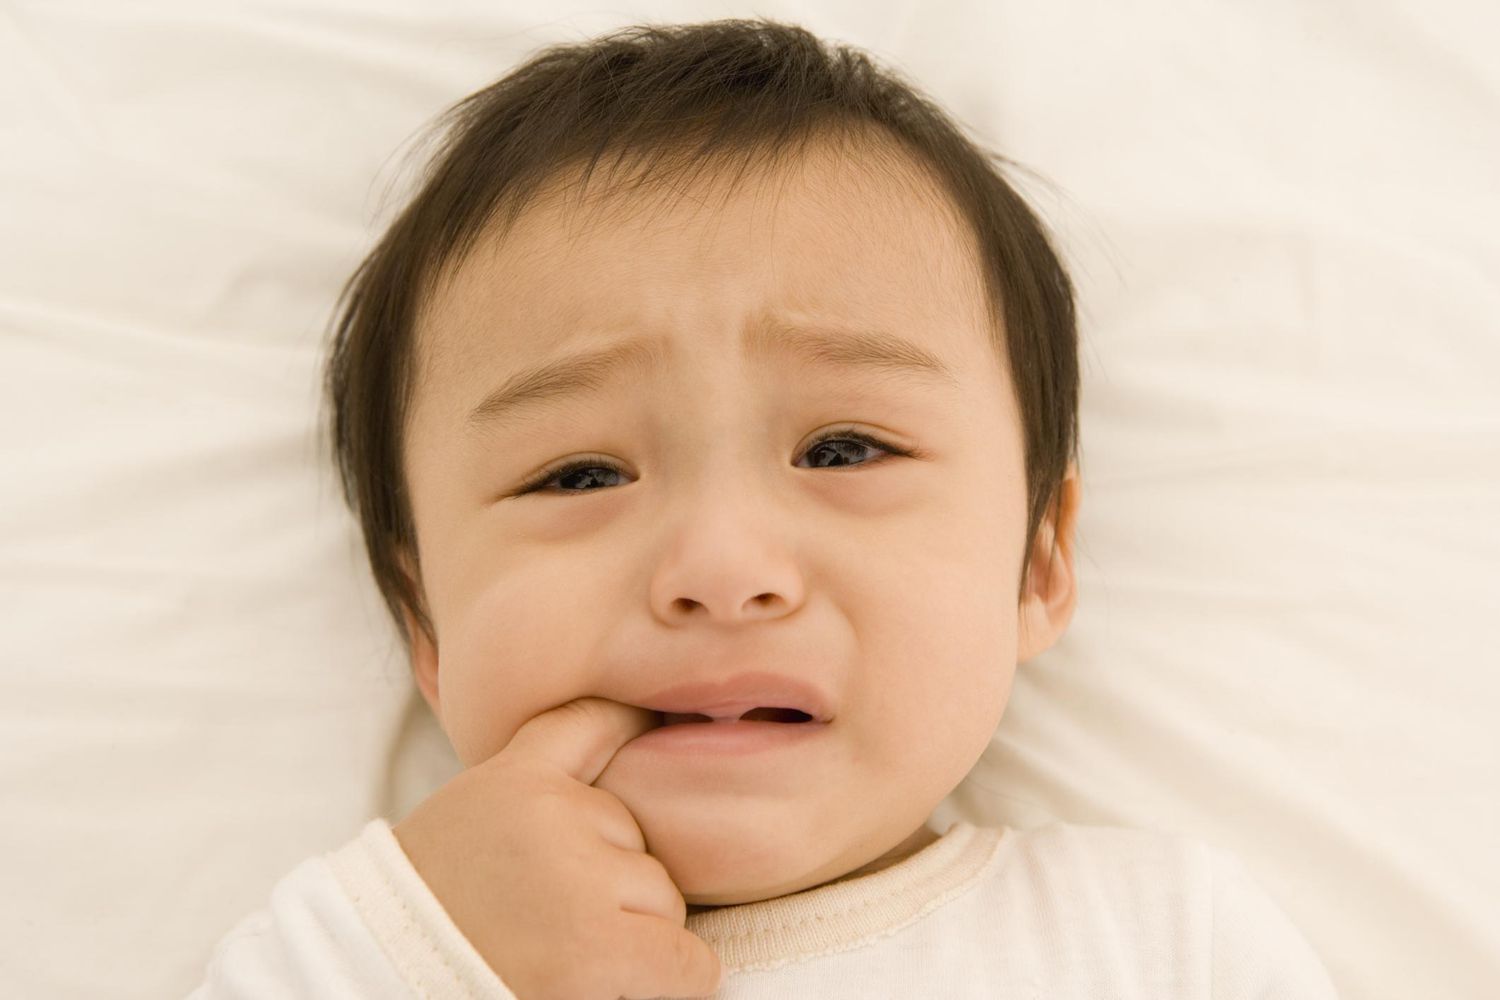 Lưu ý khi rơ lưỡi cho trẻ sơ sinh. Trẻ bị tưa miệng có đau không? Điều trị tưa lưỡi cho trẻ sơ sinh